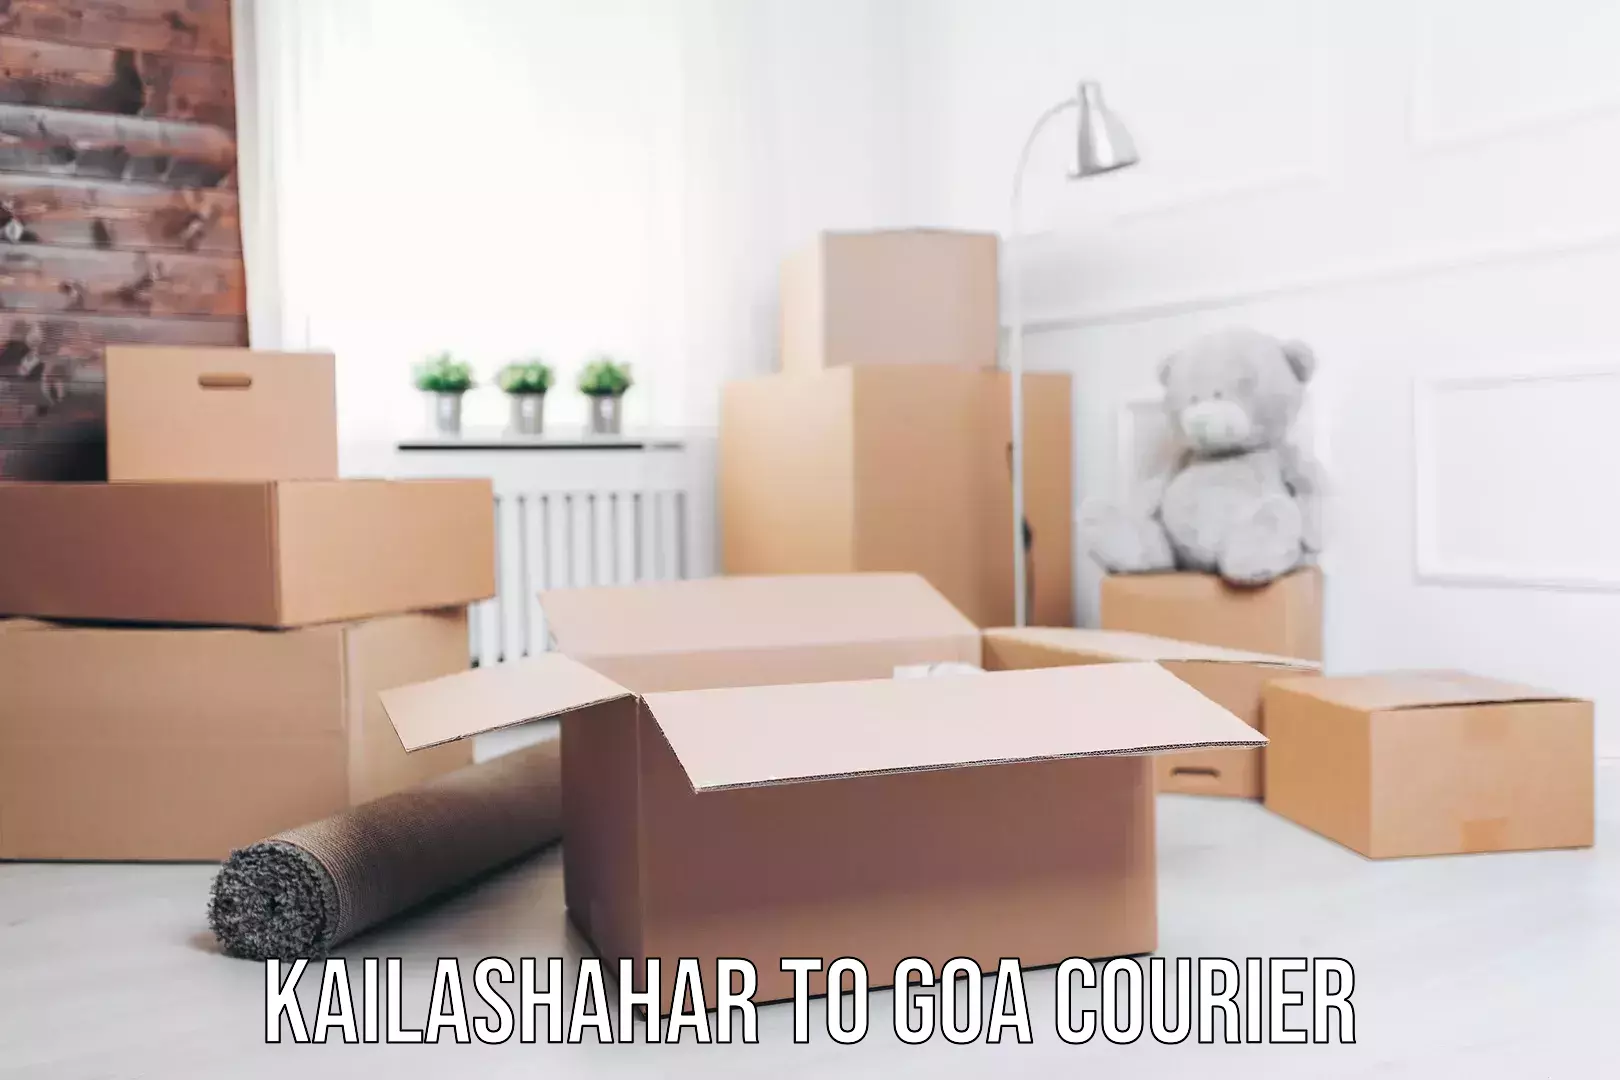 Budget-friendly shipping Kailashahar to Goa